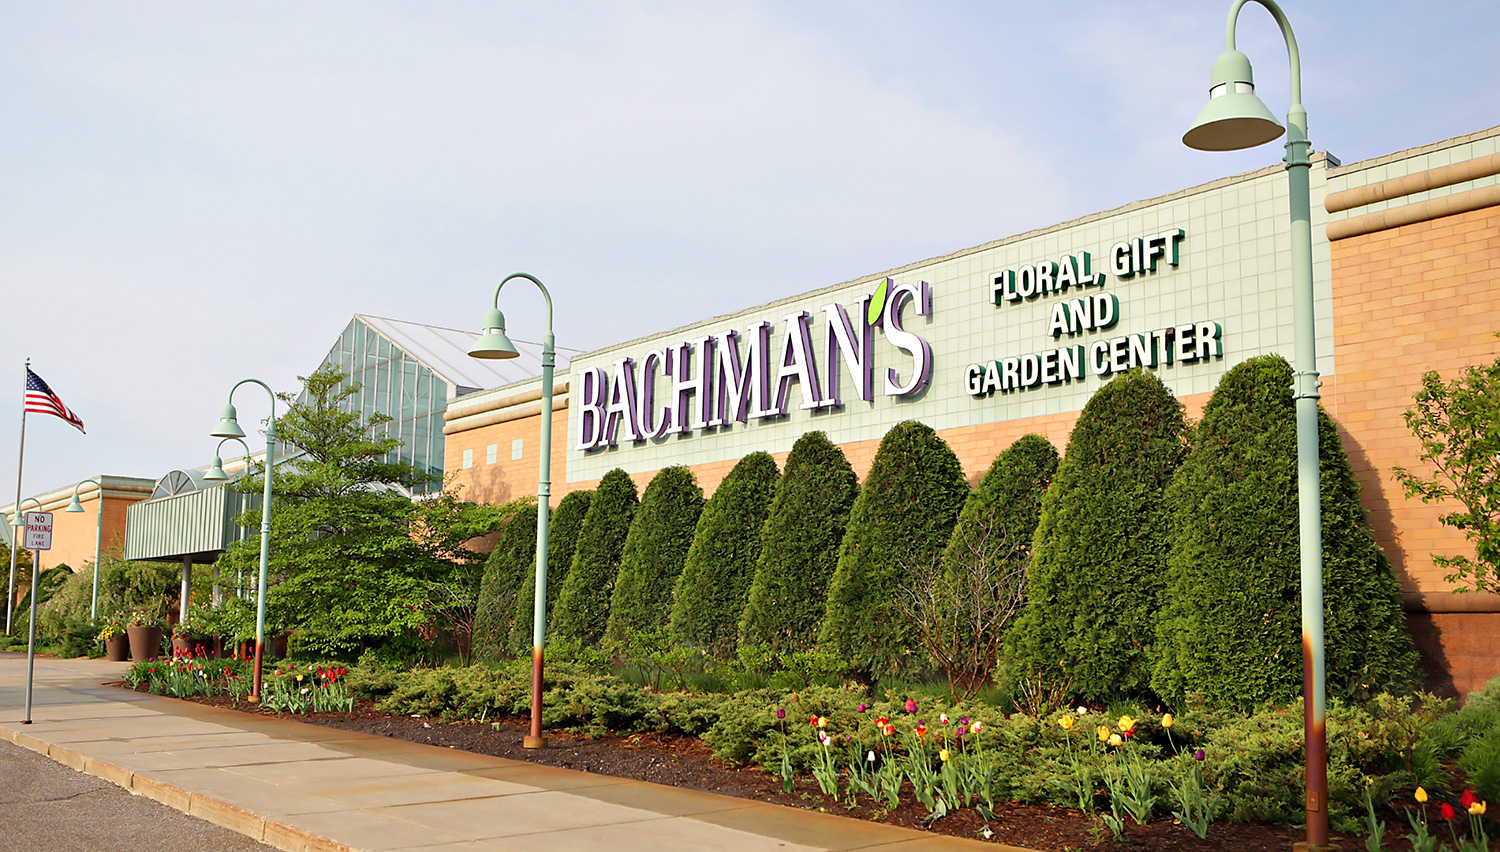 Bachman's Floral, Home & Garden